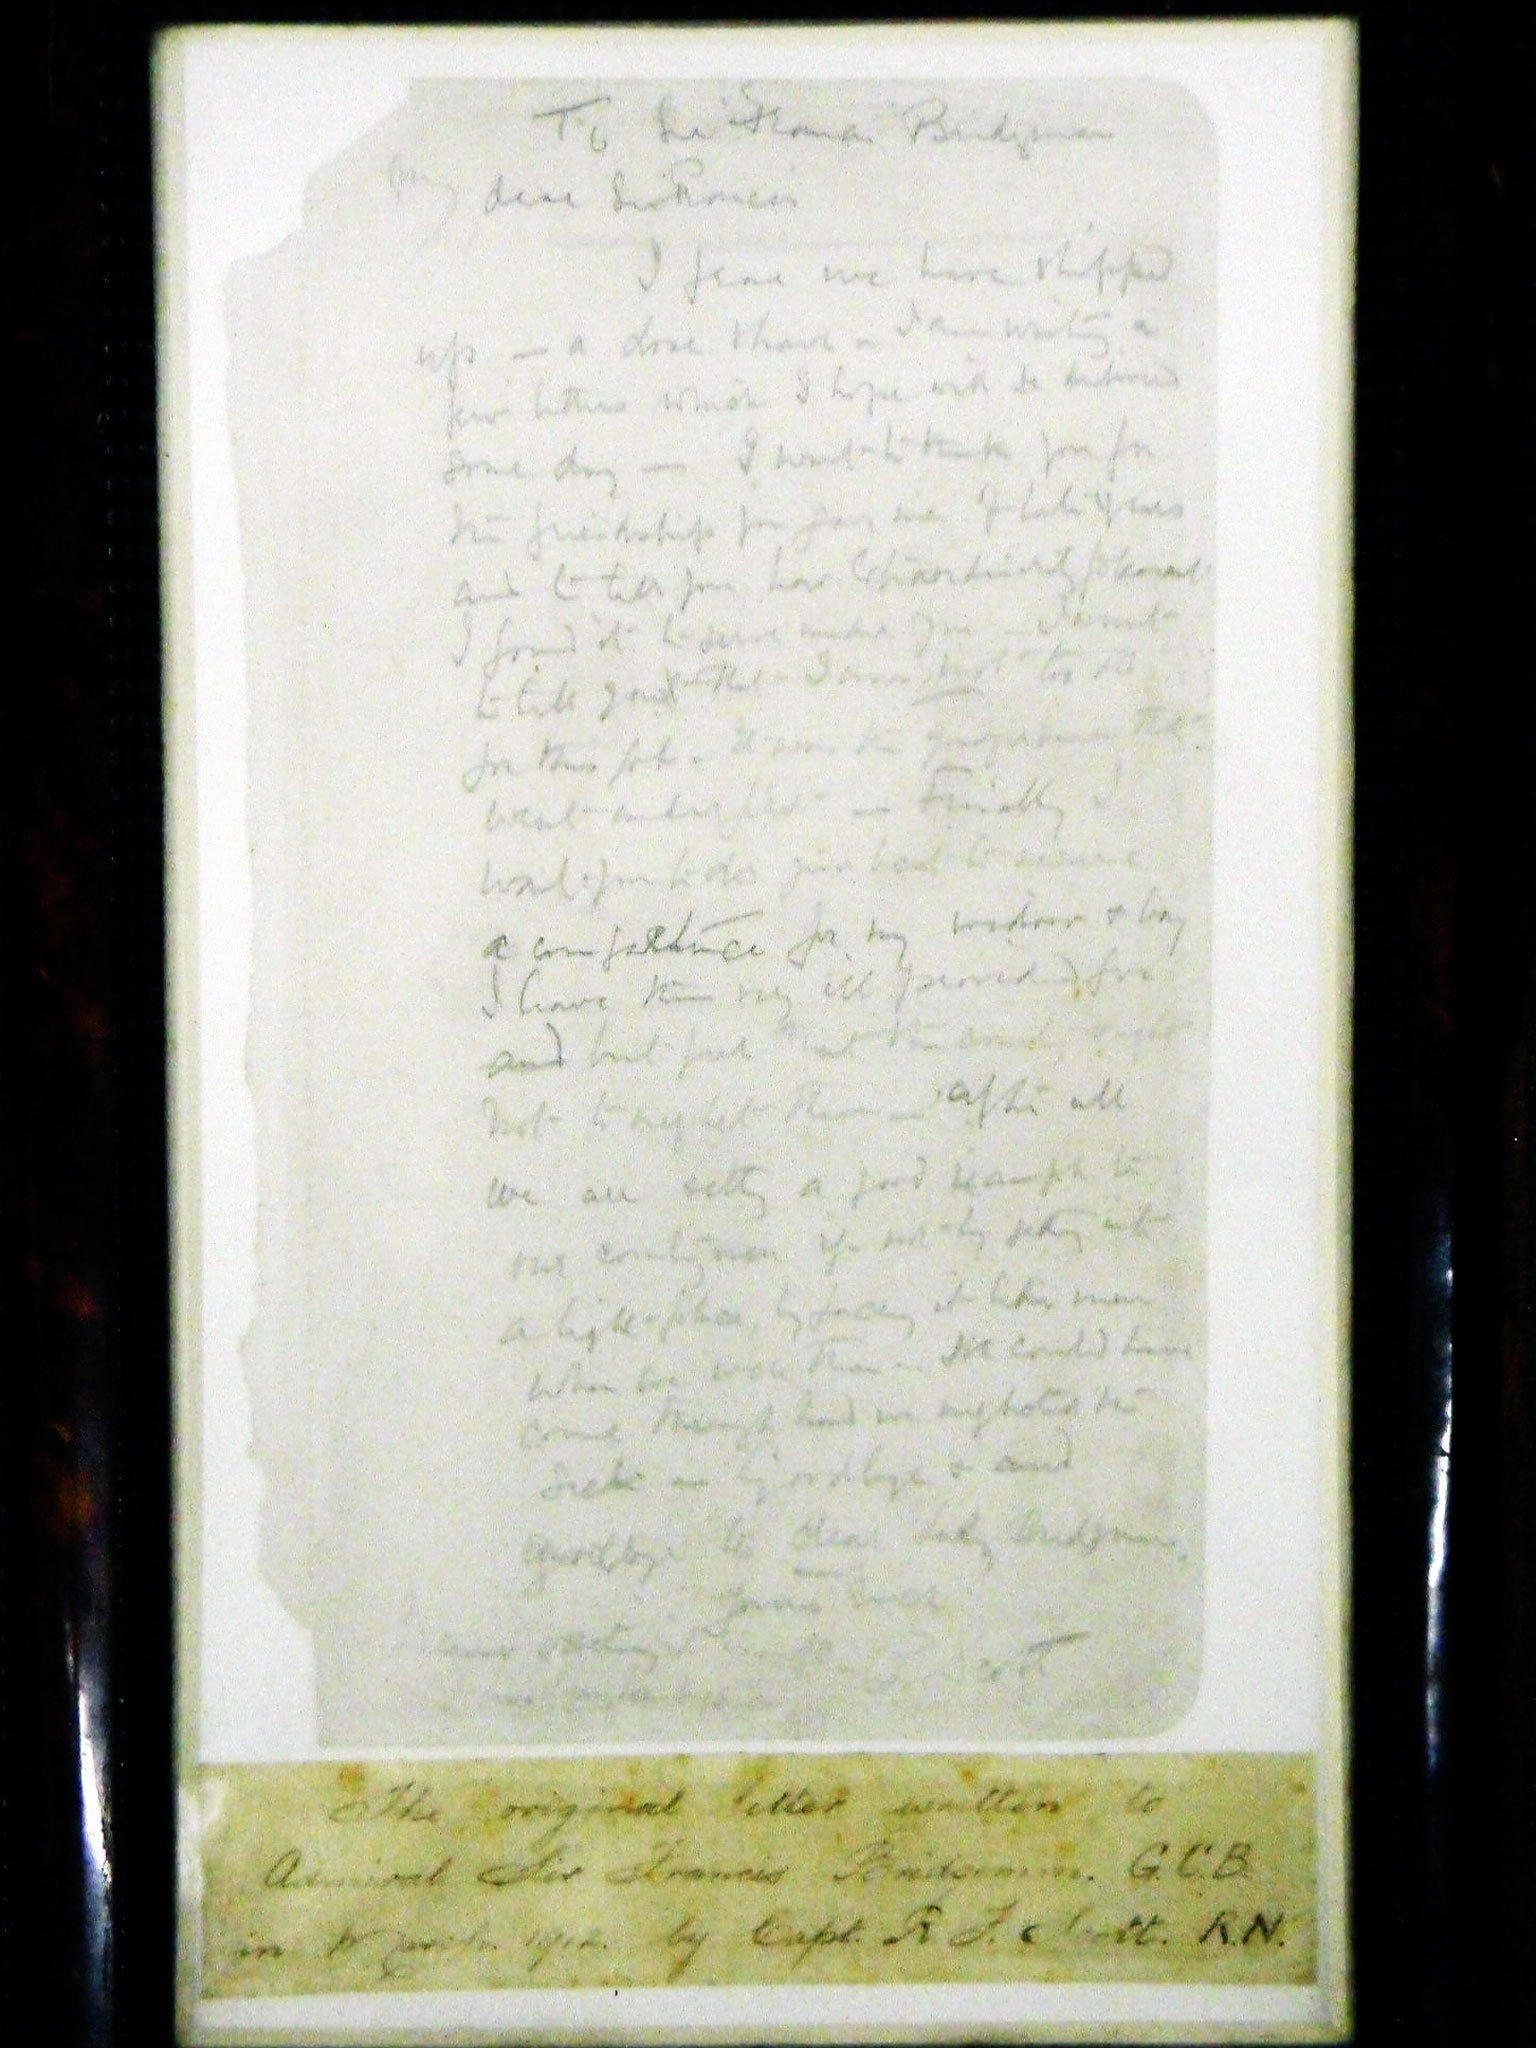 Captain Robert Scott's last letter